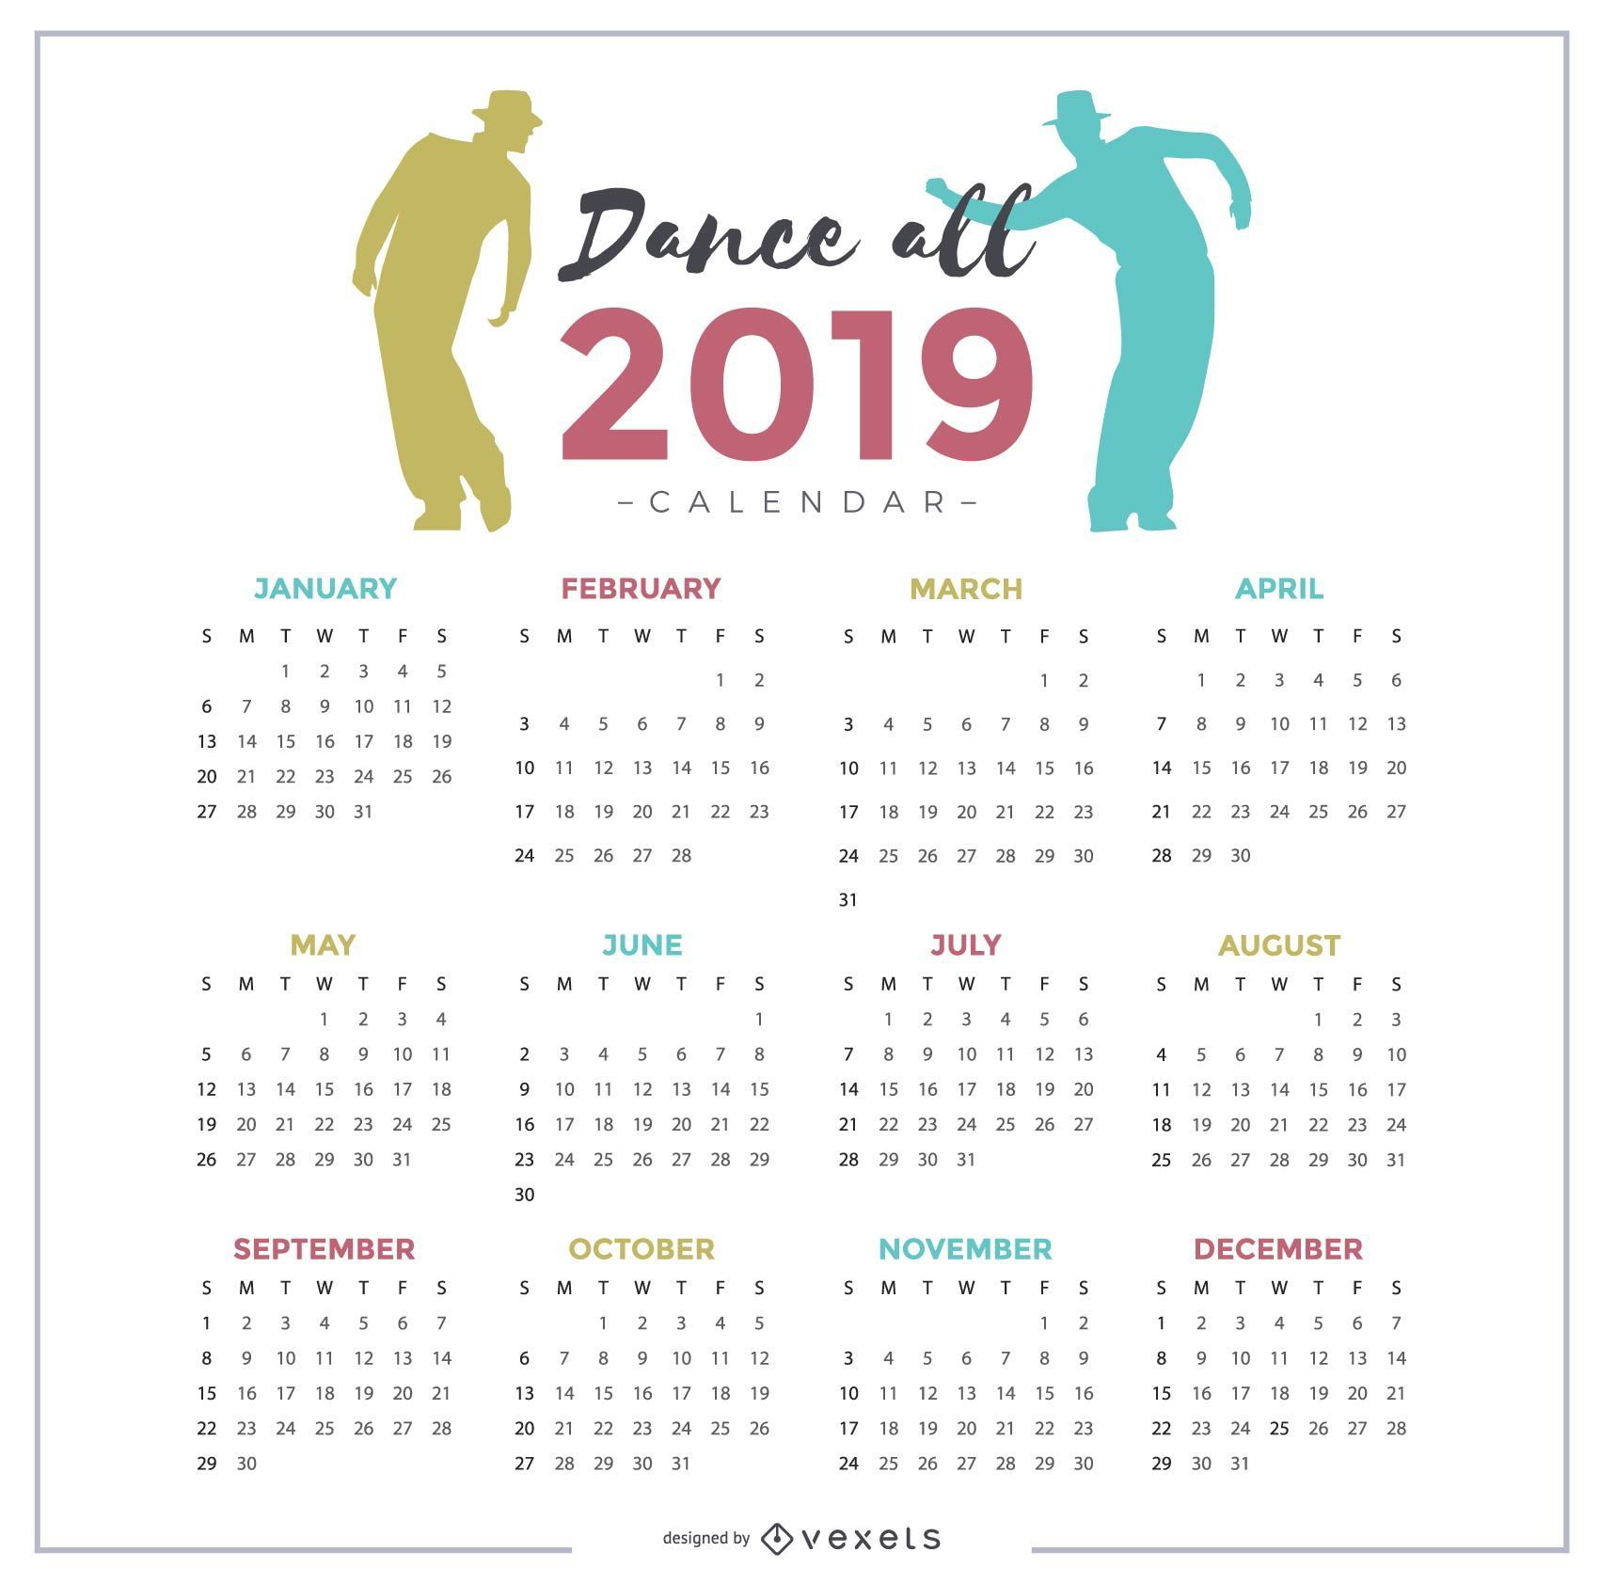 Dise?o de calendario Dance All 2019